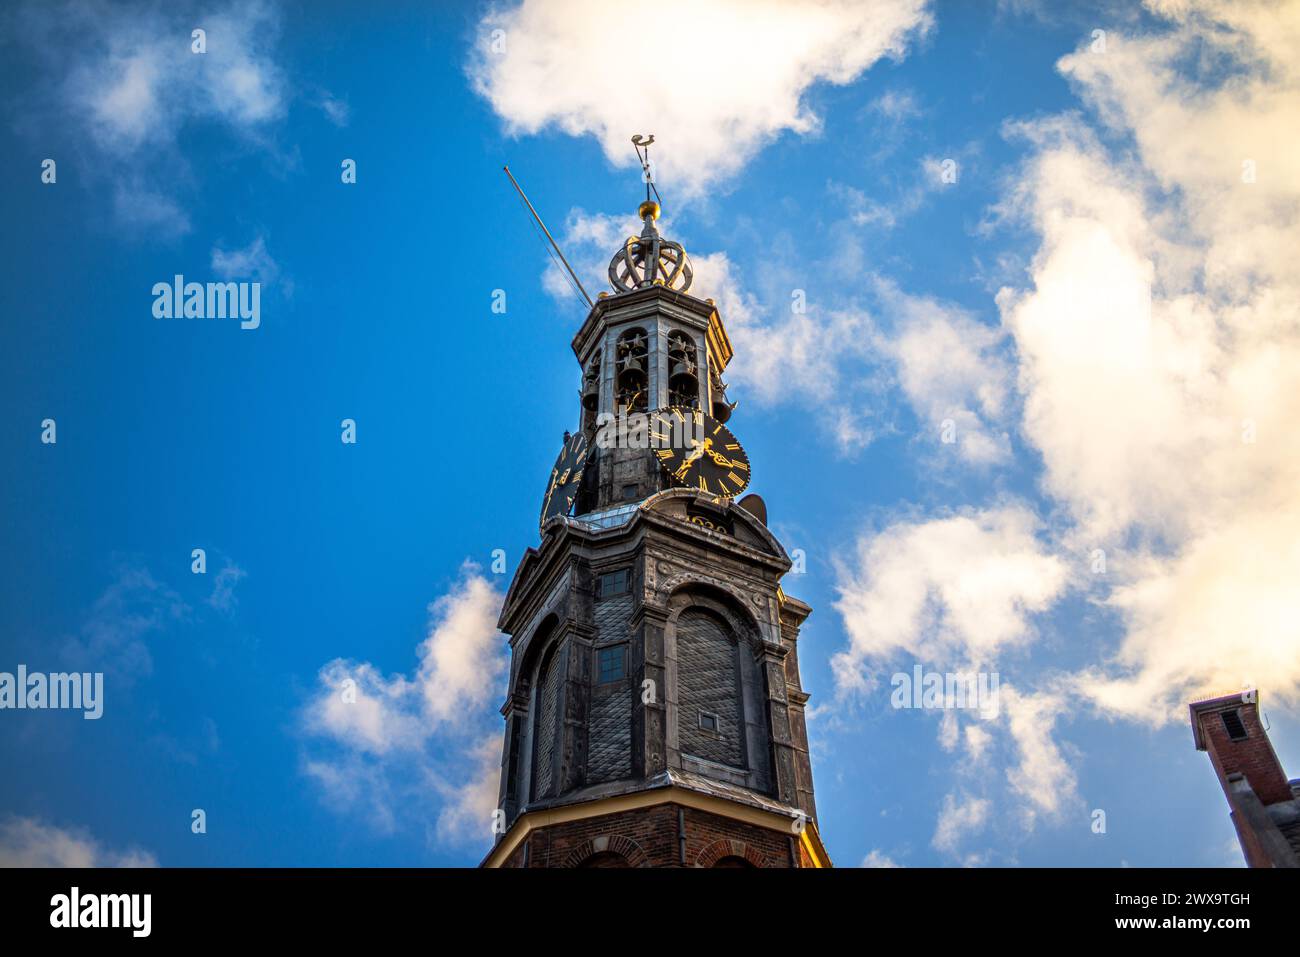 Sali in cima a una vecchia chiesa di Amsterdam per ammirare viste panoramiche, dove le guglie storiche toccano il cielo in questo iconico paesaggio urbano europeo. Foto Stock